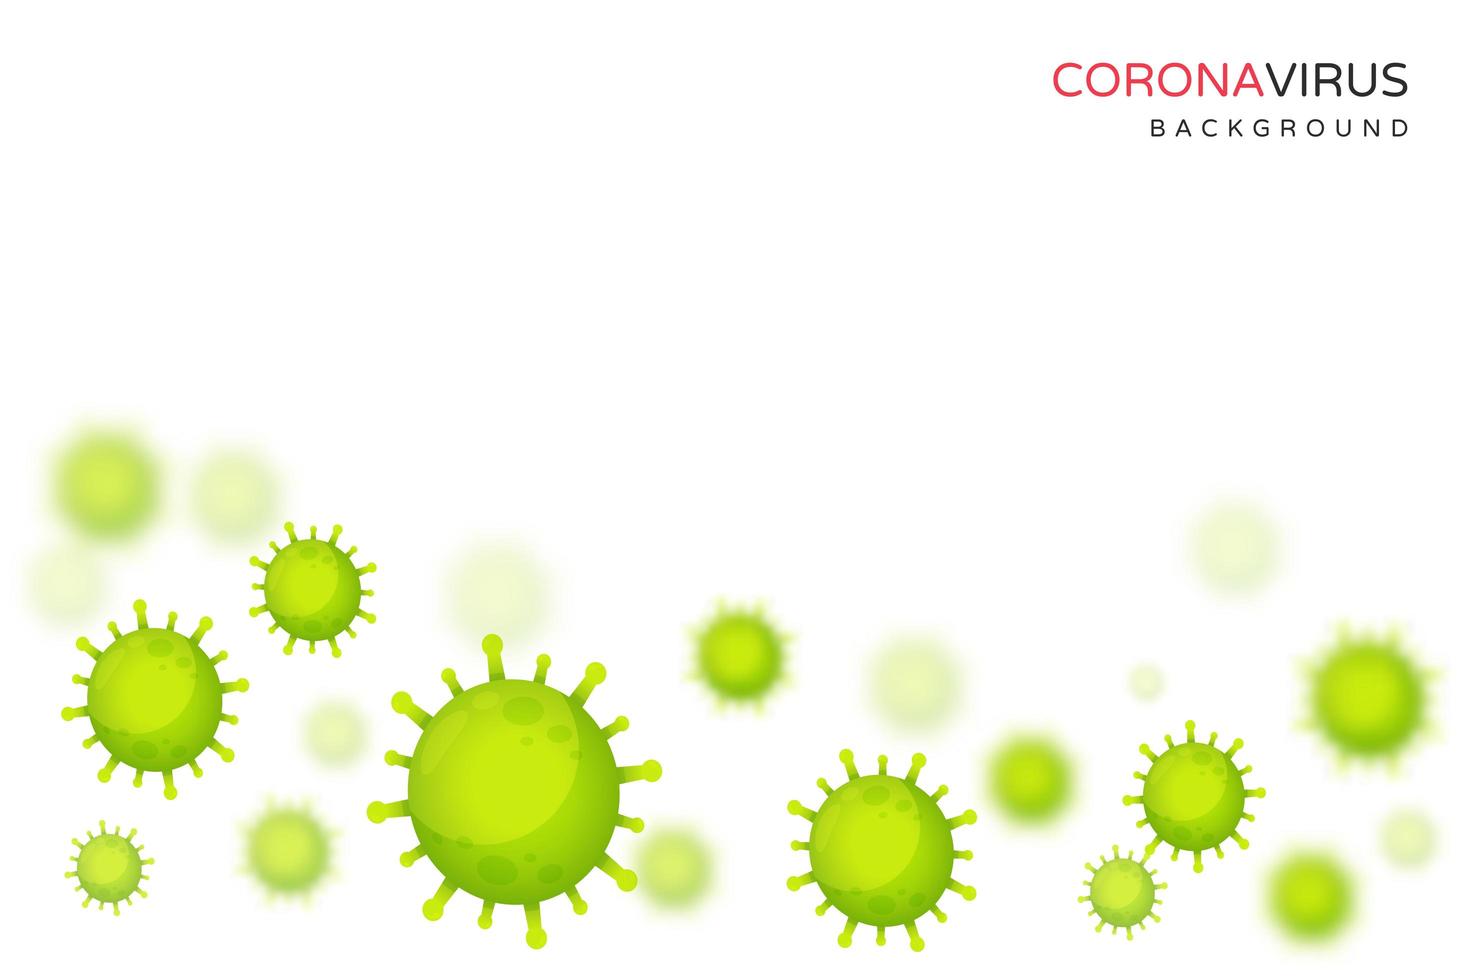 groene coronaviruscellen die op witte achtergrond drijven vector